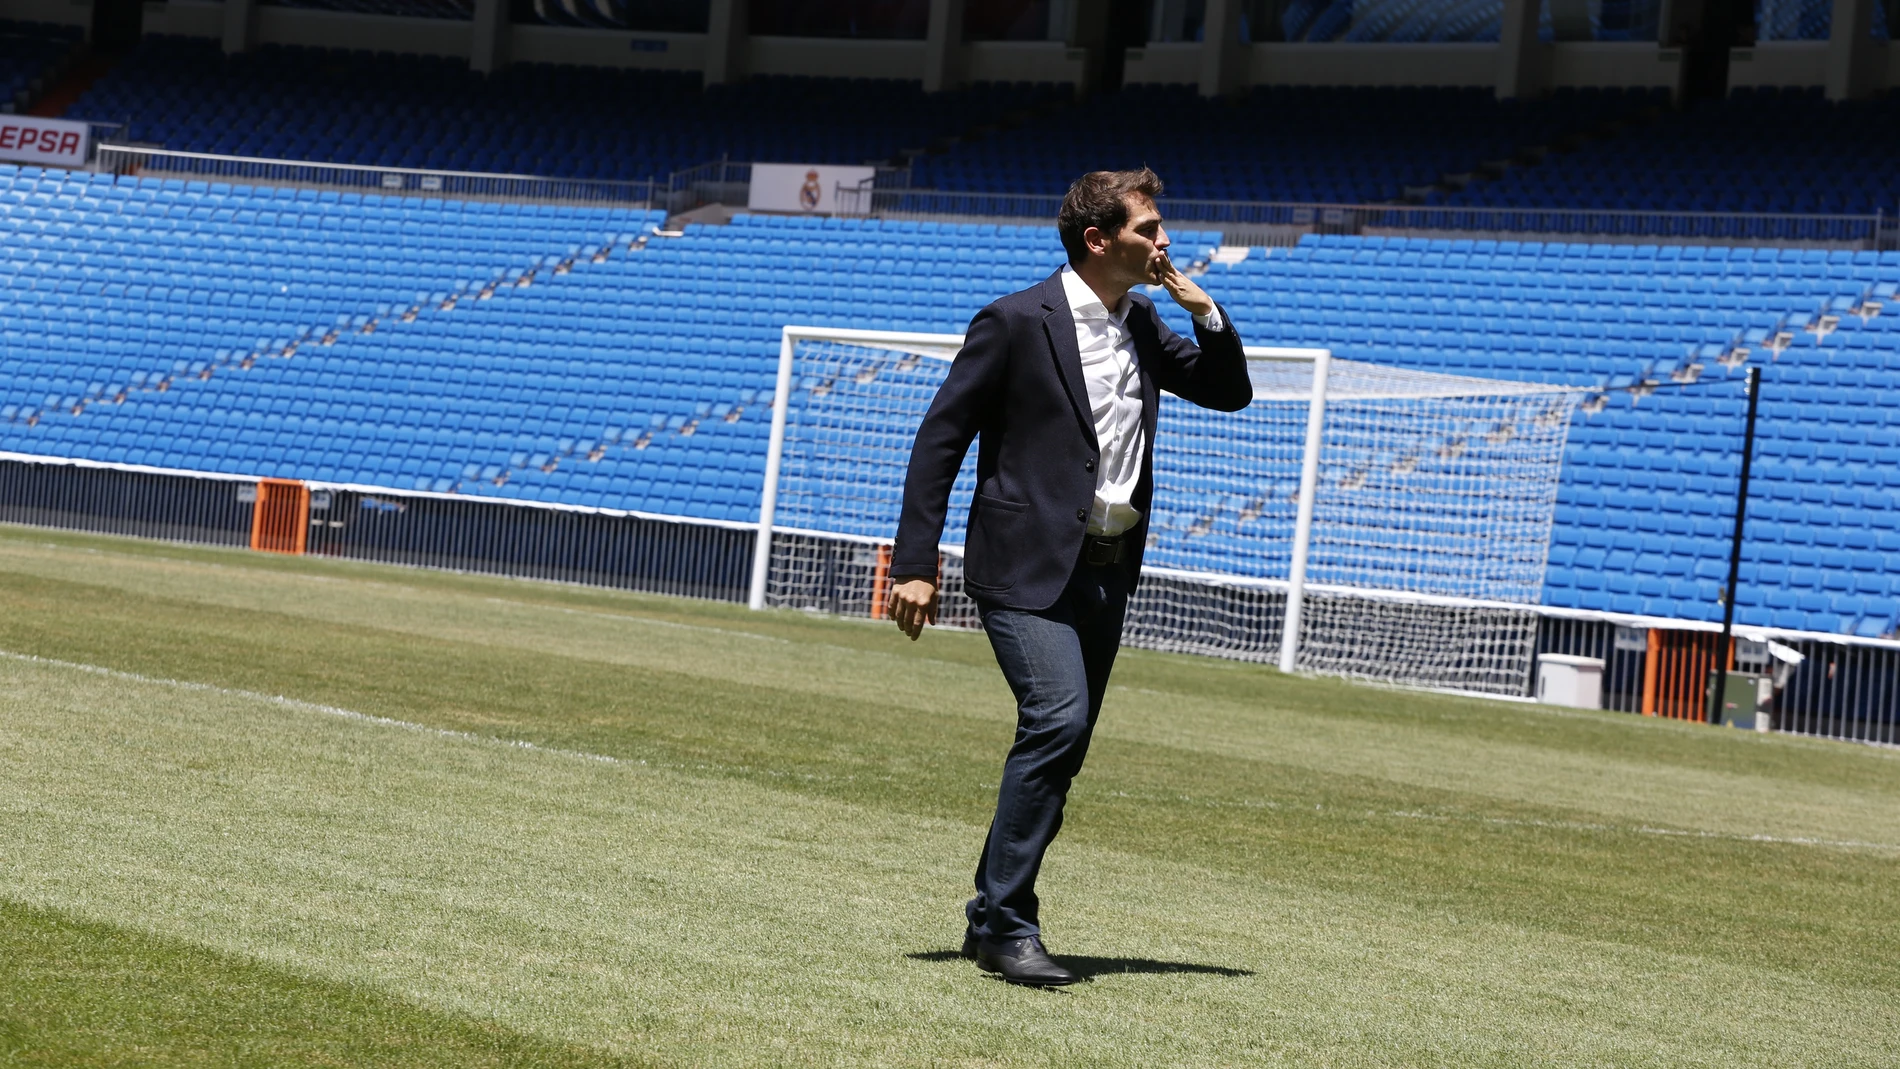 Fútbol.- Iker Casillas recuerda su último partido con el Real Madrid: "Algún día volveré"